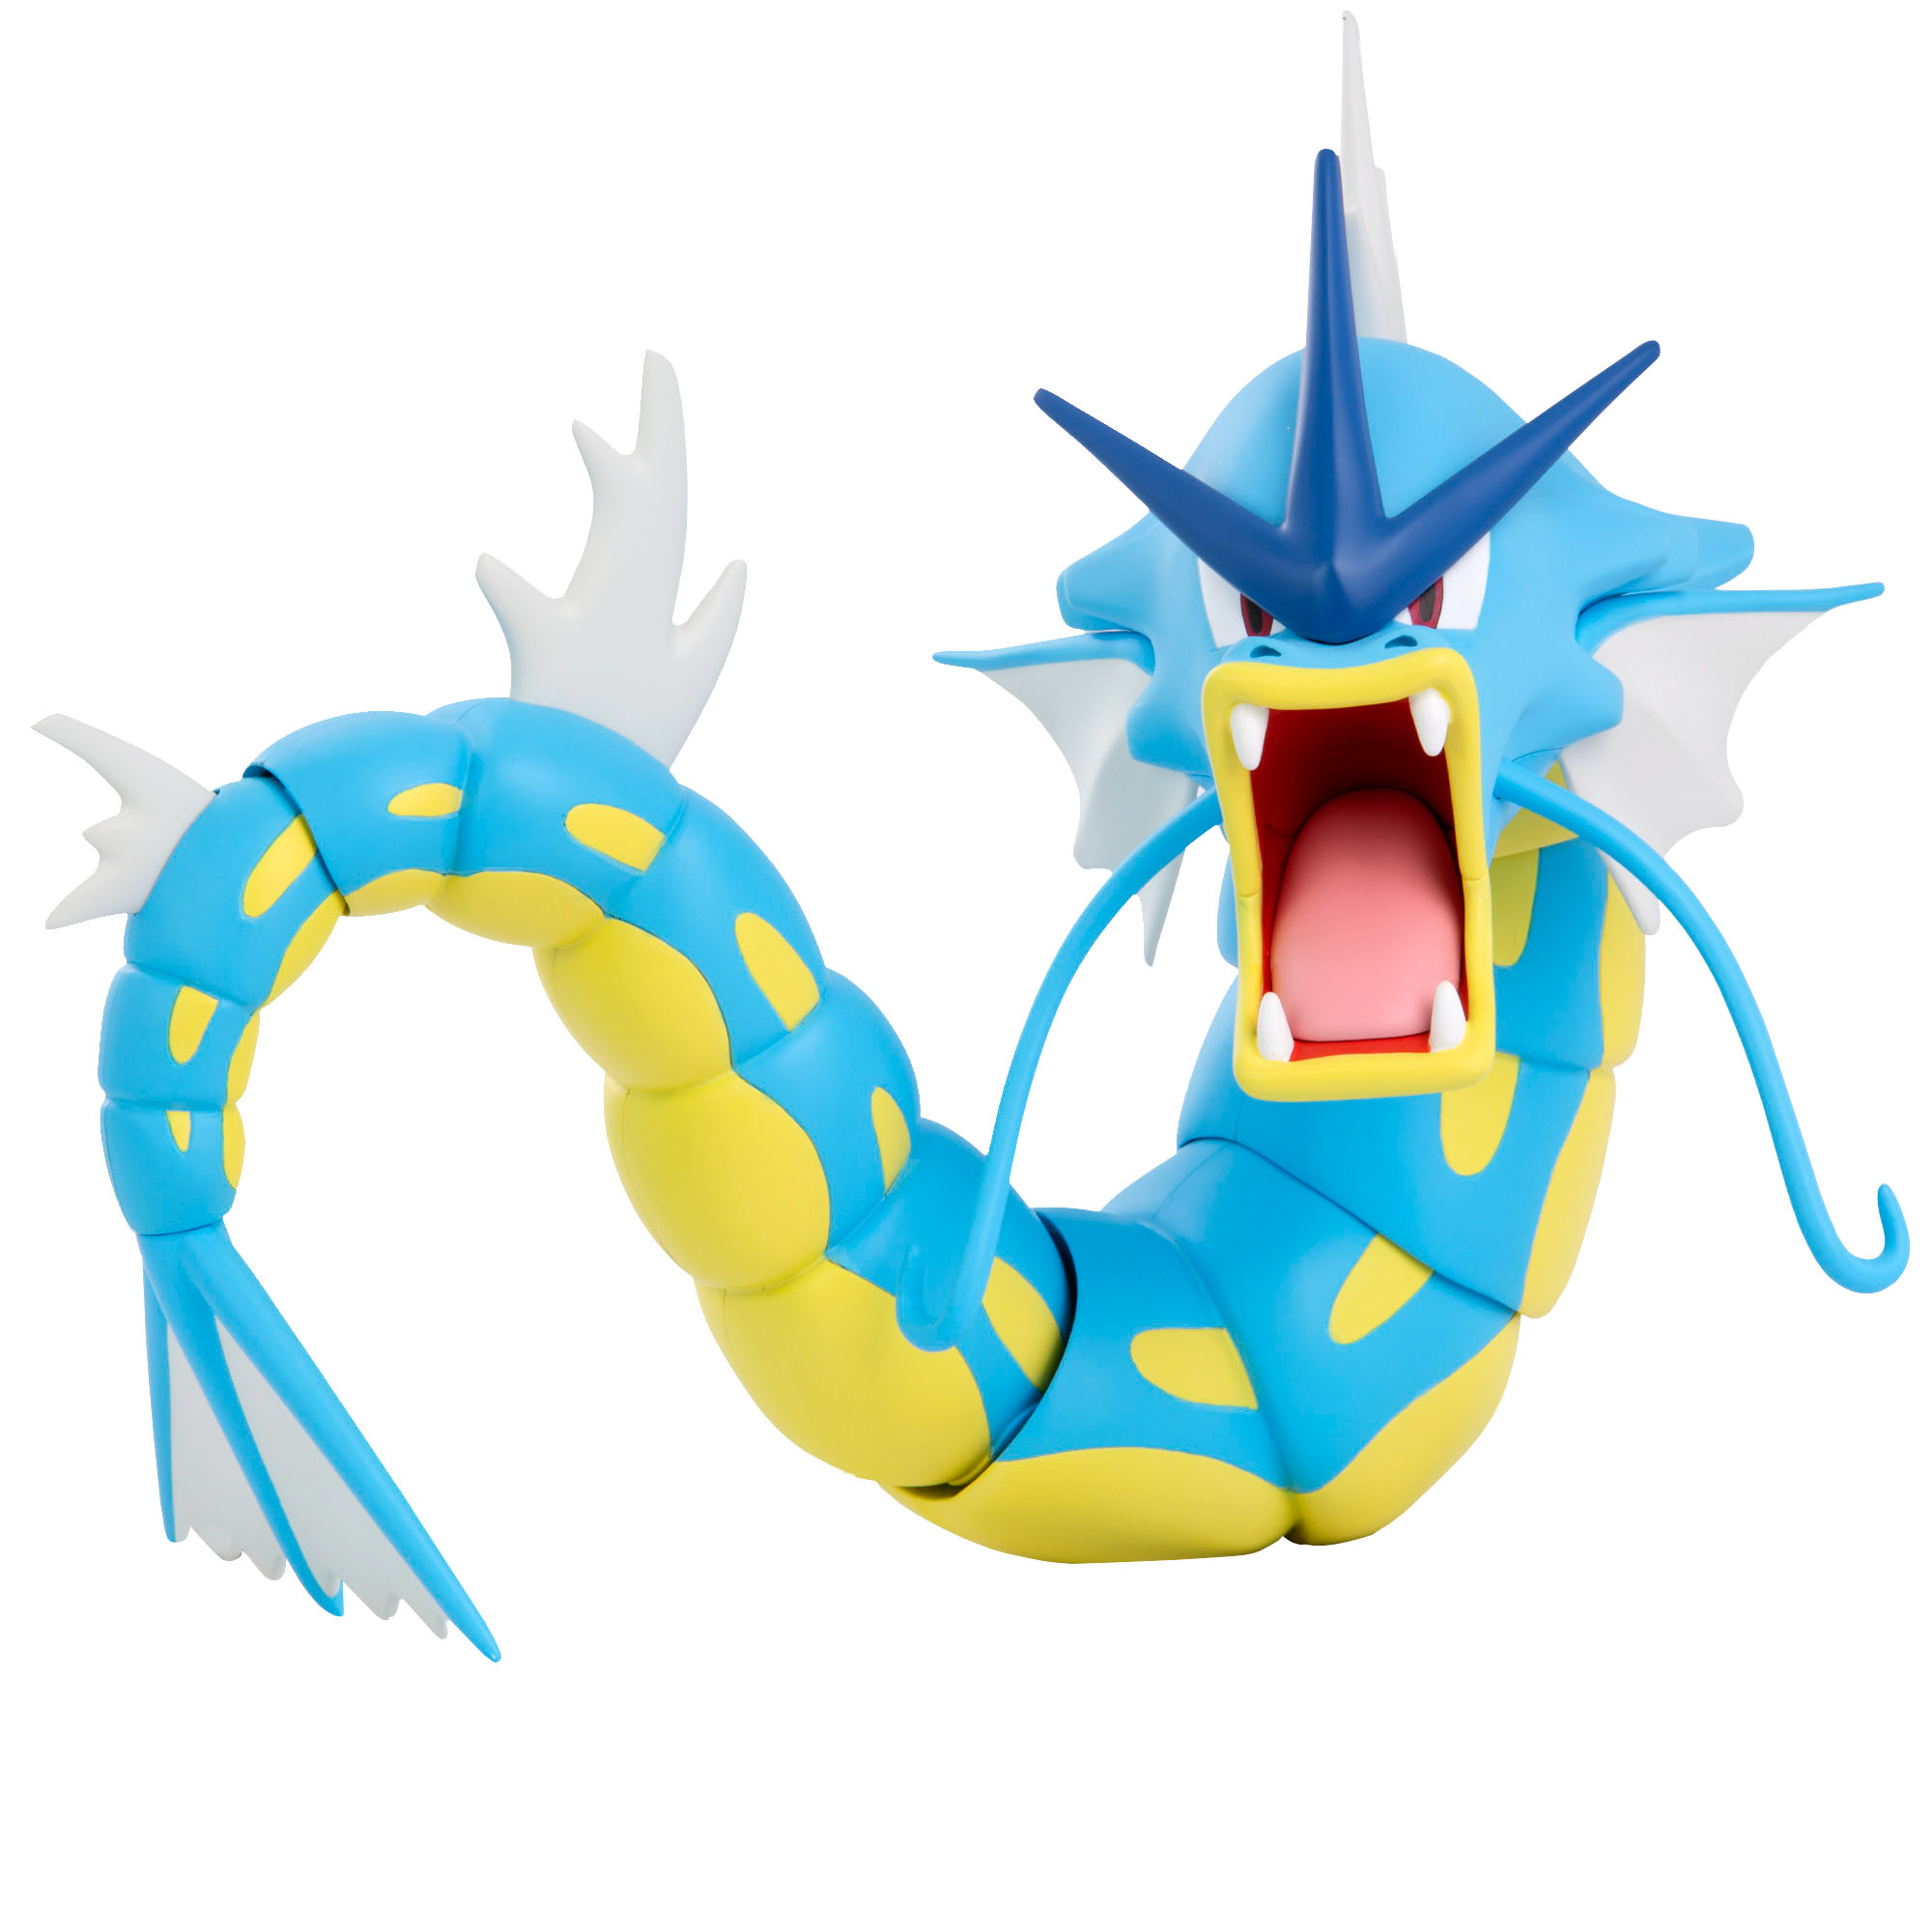 Garados - Figur Pokémon Epische 30 cm